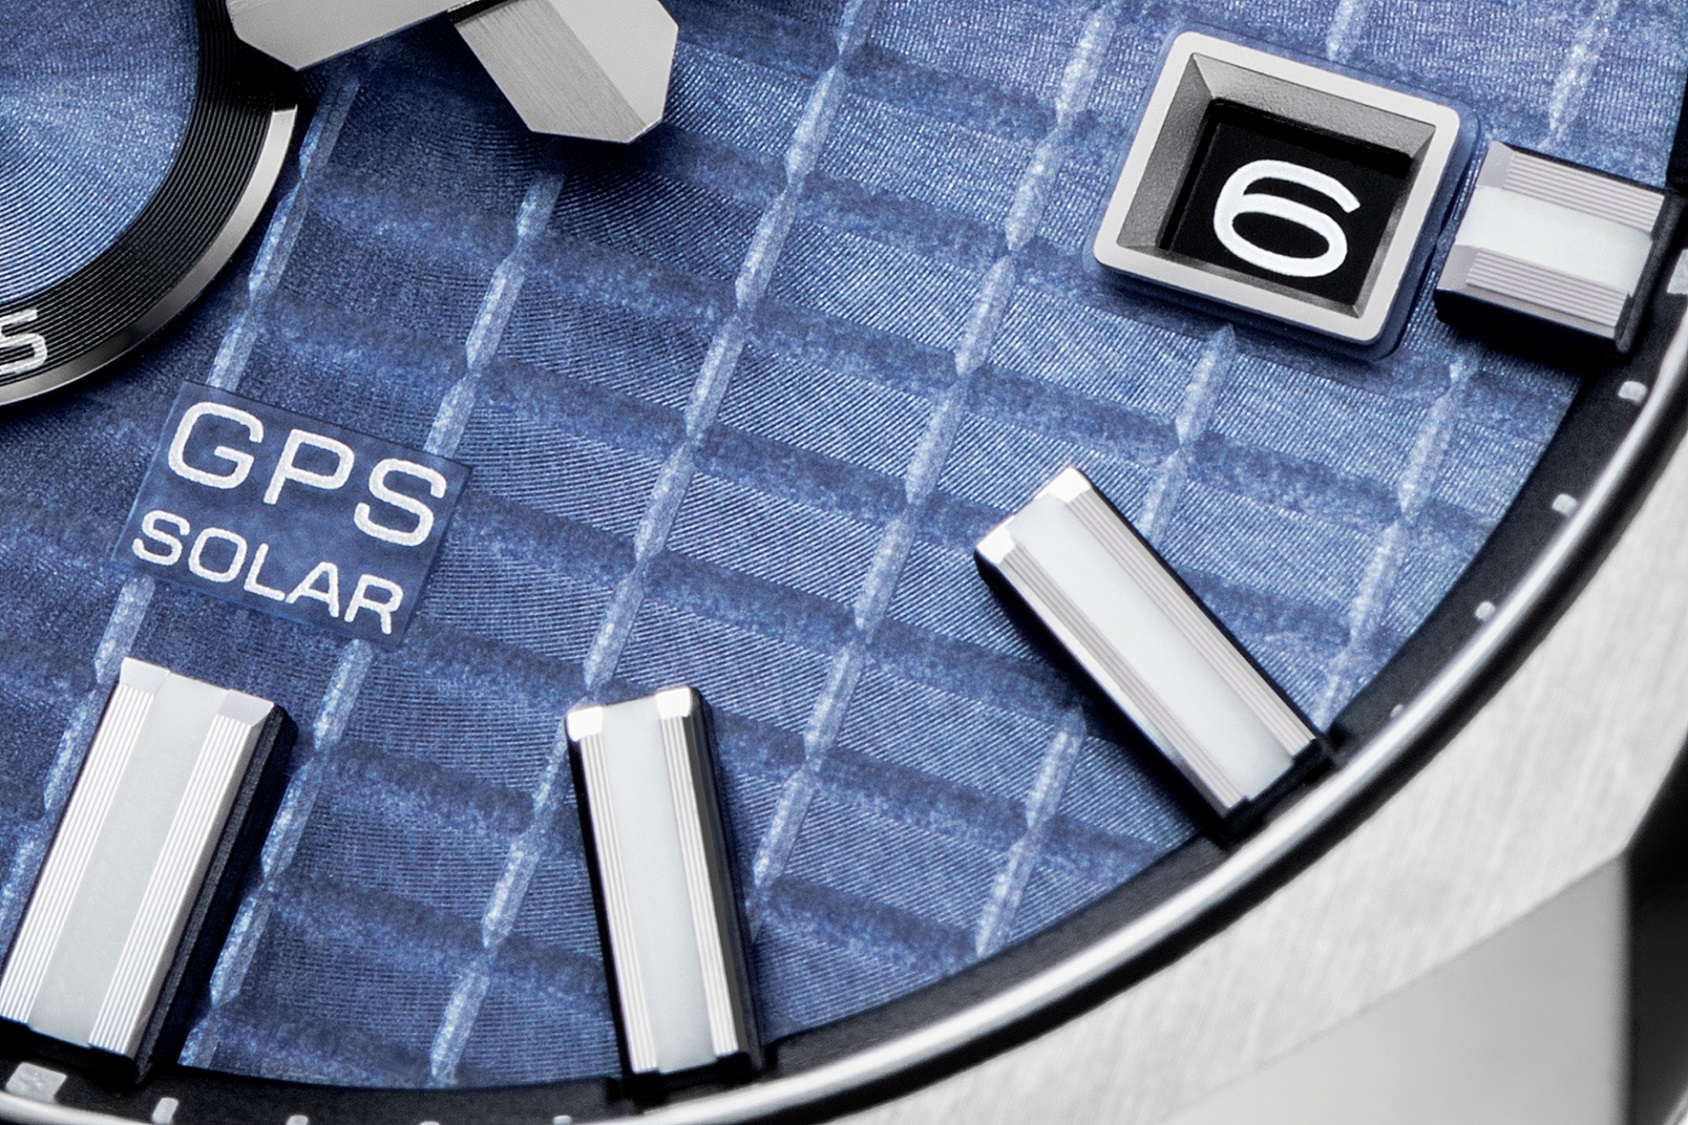 Detalhe do padrão de cristais rectangulares do mostrador da série desportiva Seiko Astron GPS Solar 3X.